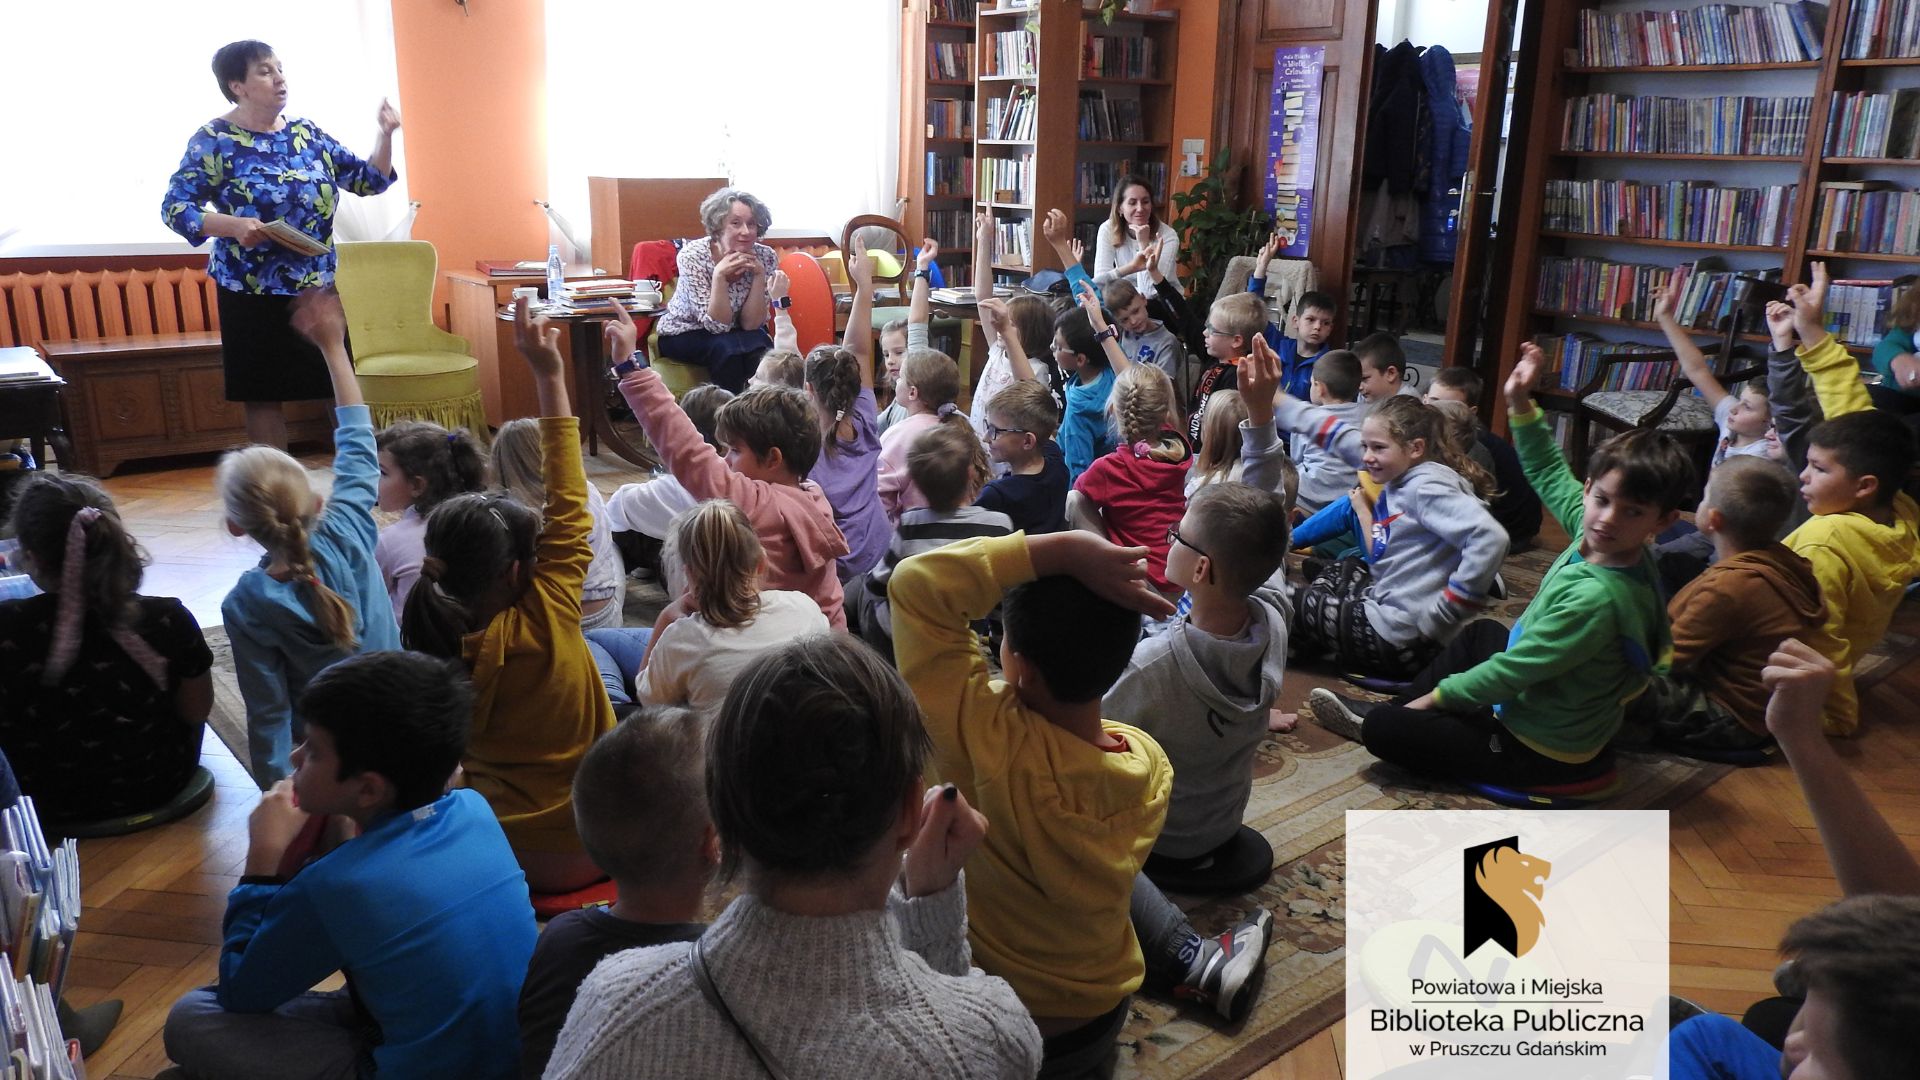 Pani Renata Piątkowska stoi. W jednej ręce trzyma książkę, a drugą rękę ma uniesioną lekko w górę. Obok, na fotelu, siedzi pani Malwina Kożurno. W stronę kobiet zwrócona jest duża grupa dzieci siedząca na dywanie. Wiele dzieci ma uniesioną do góry rękę.